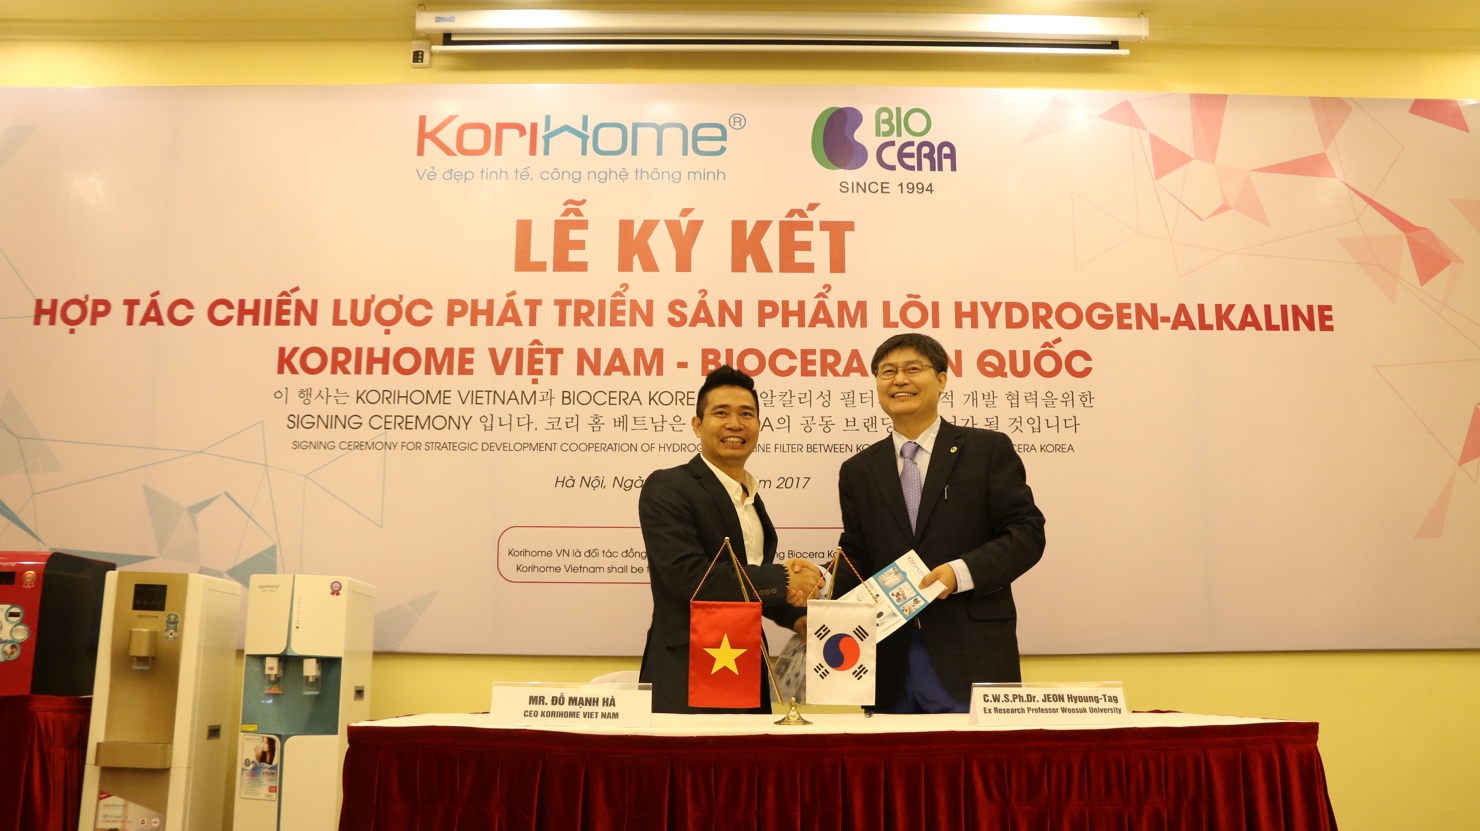 Đại diện Công ty Cổ phần Korihome Việt Nam và đối tác Biocera Hàn Quốc đã ký kết hợp tác phát triển sản phẩm ngày 20/7/2017 tại Hà Nội.